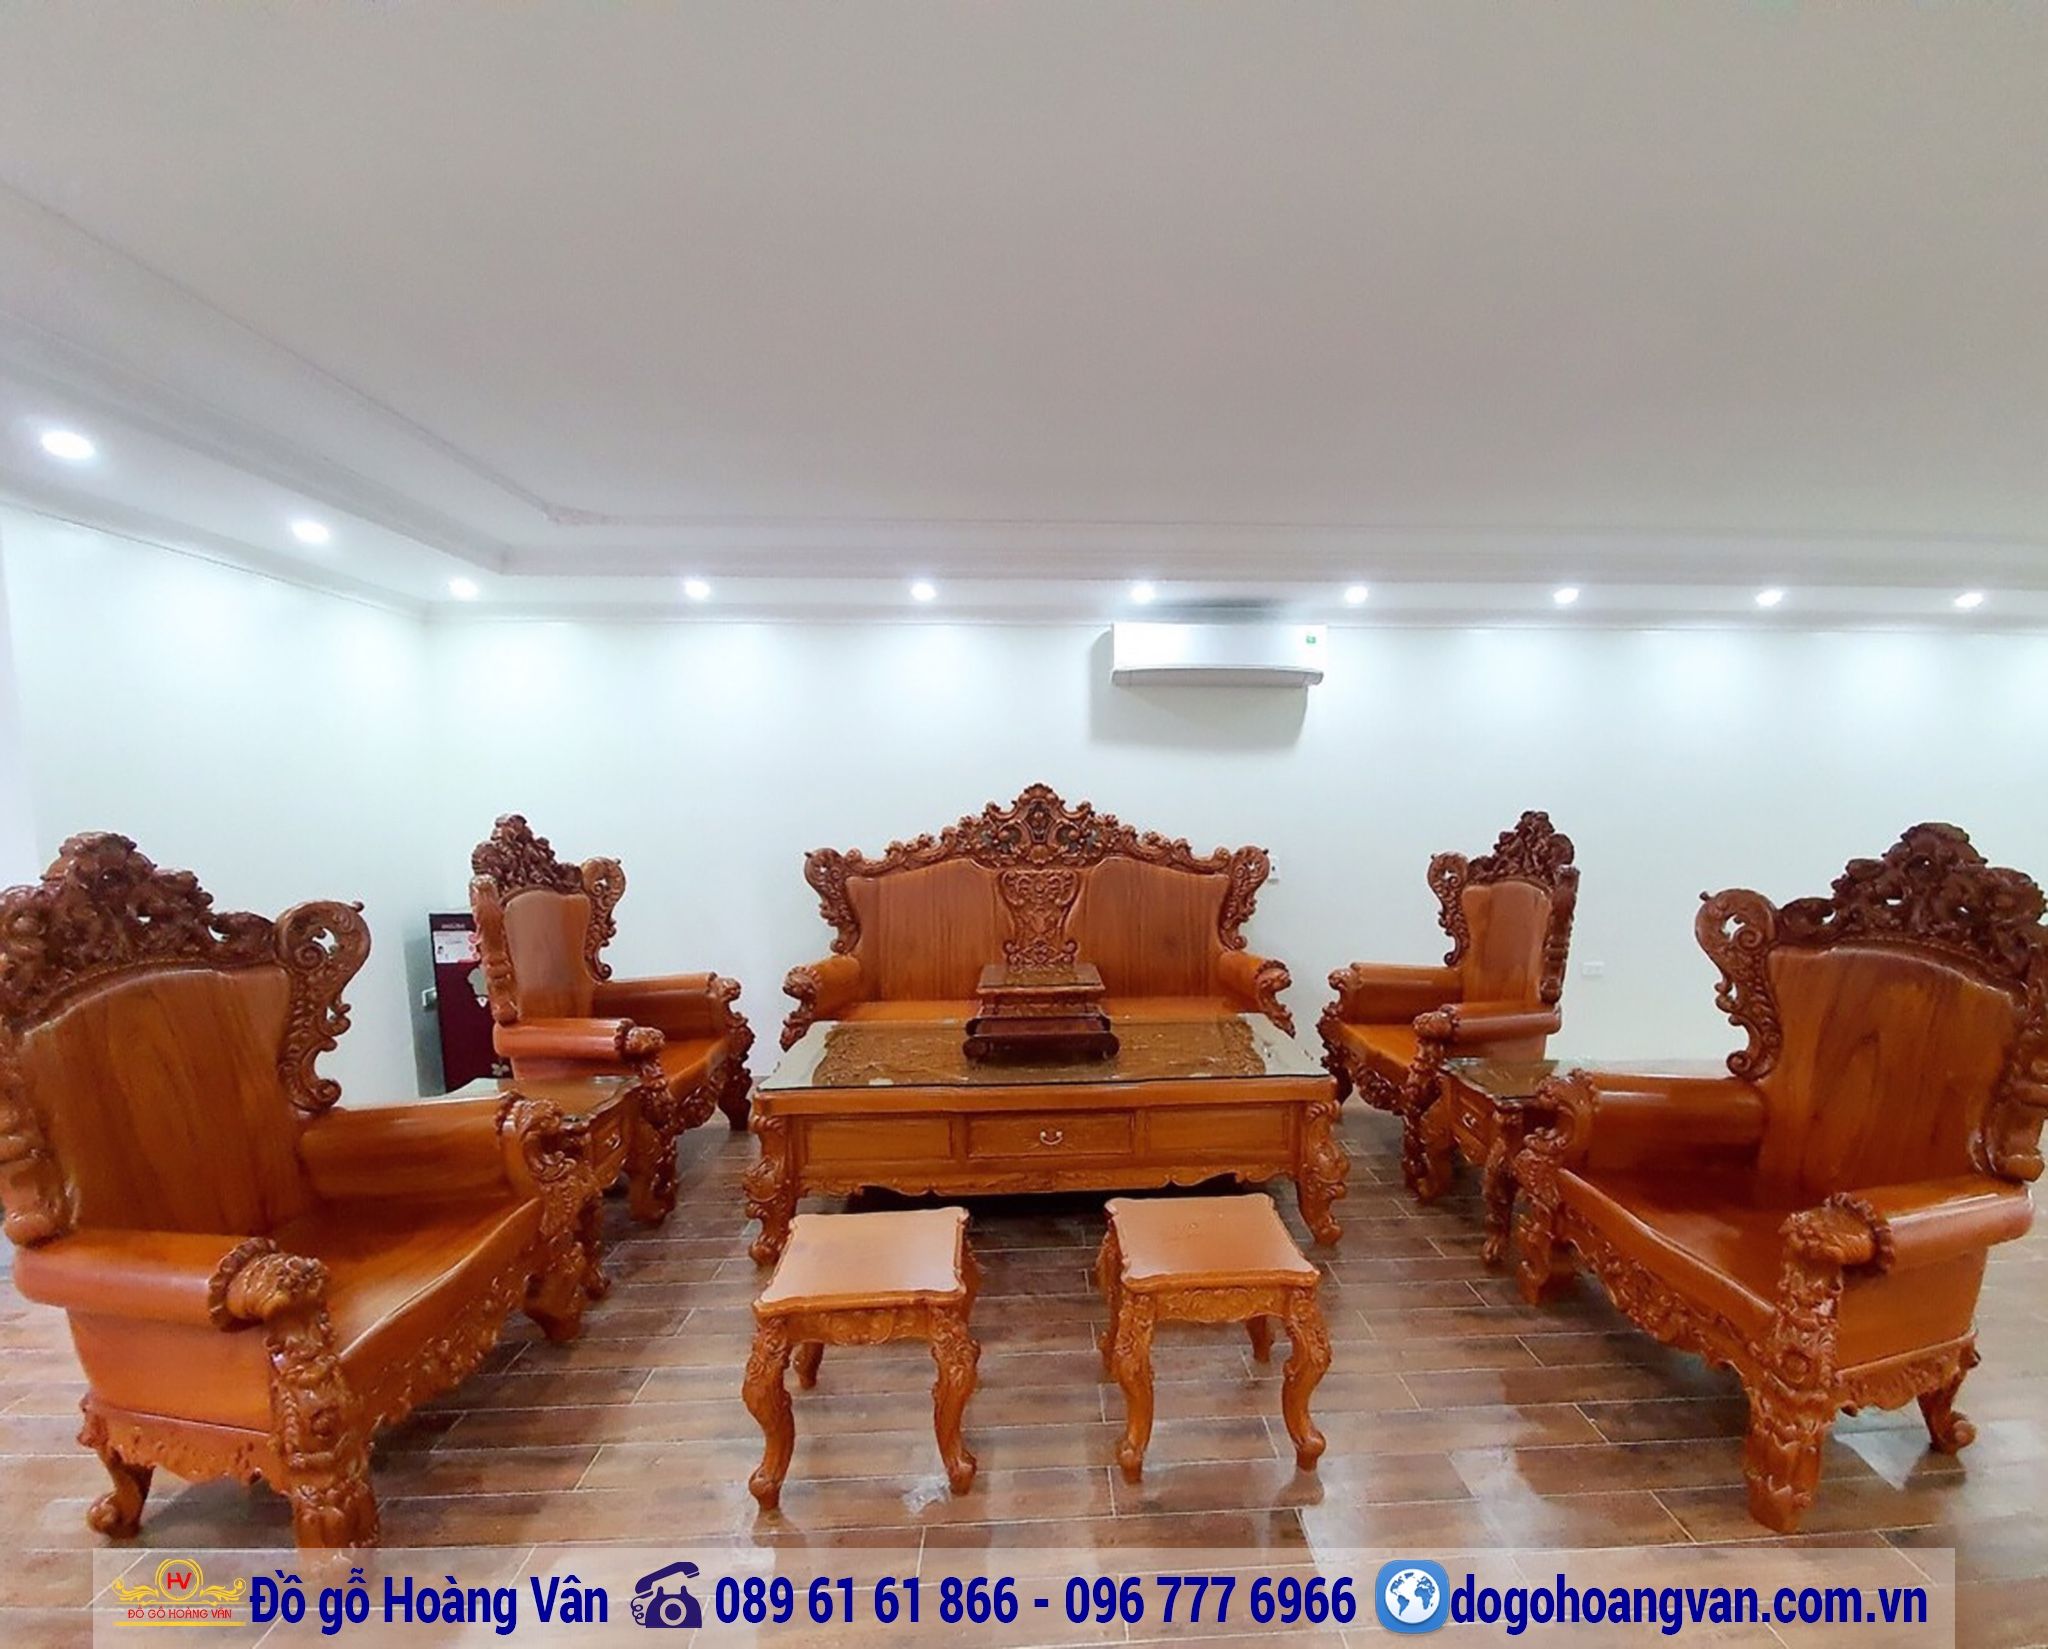 Nơi Bán Bộ Bàn Ghế Phòng Khách Đẹp Tại Hà Nội BG346 – Đồ gỗ Hoàng Vân